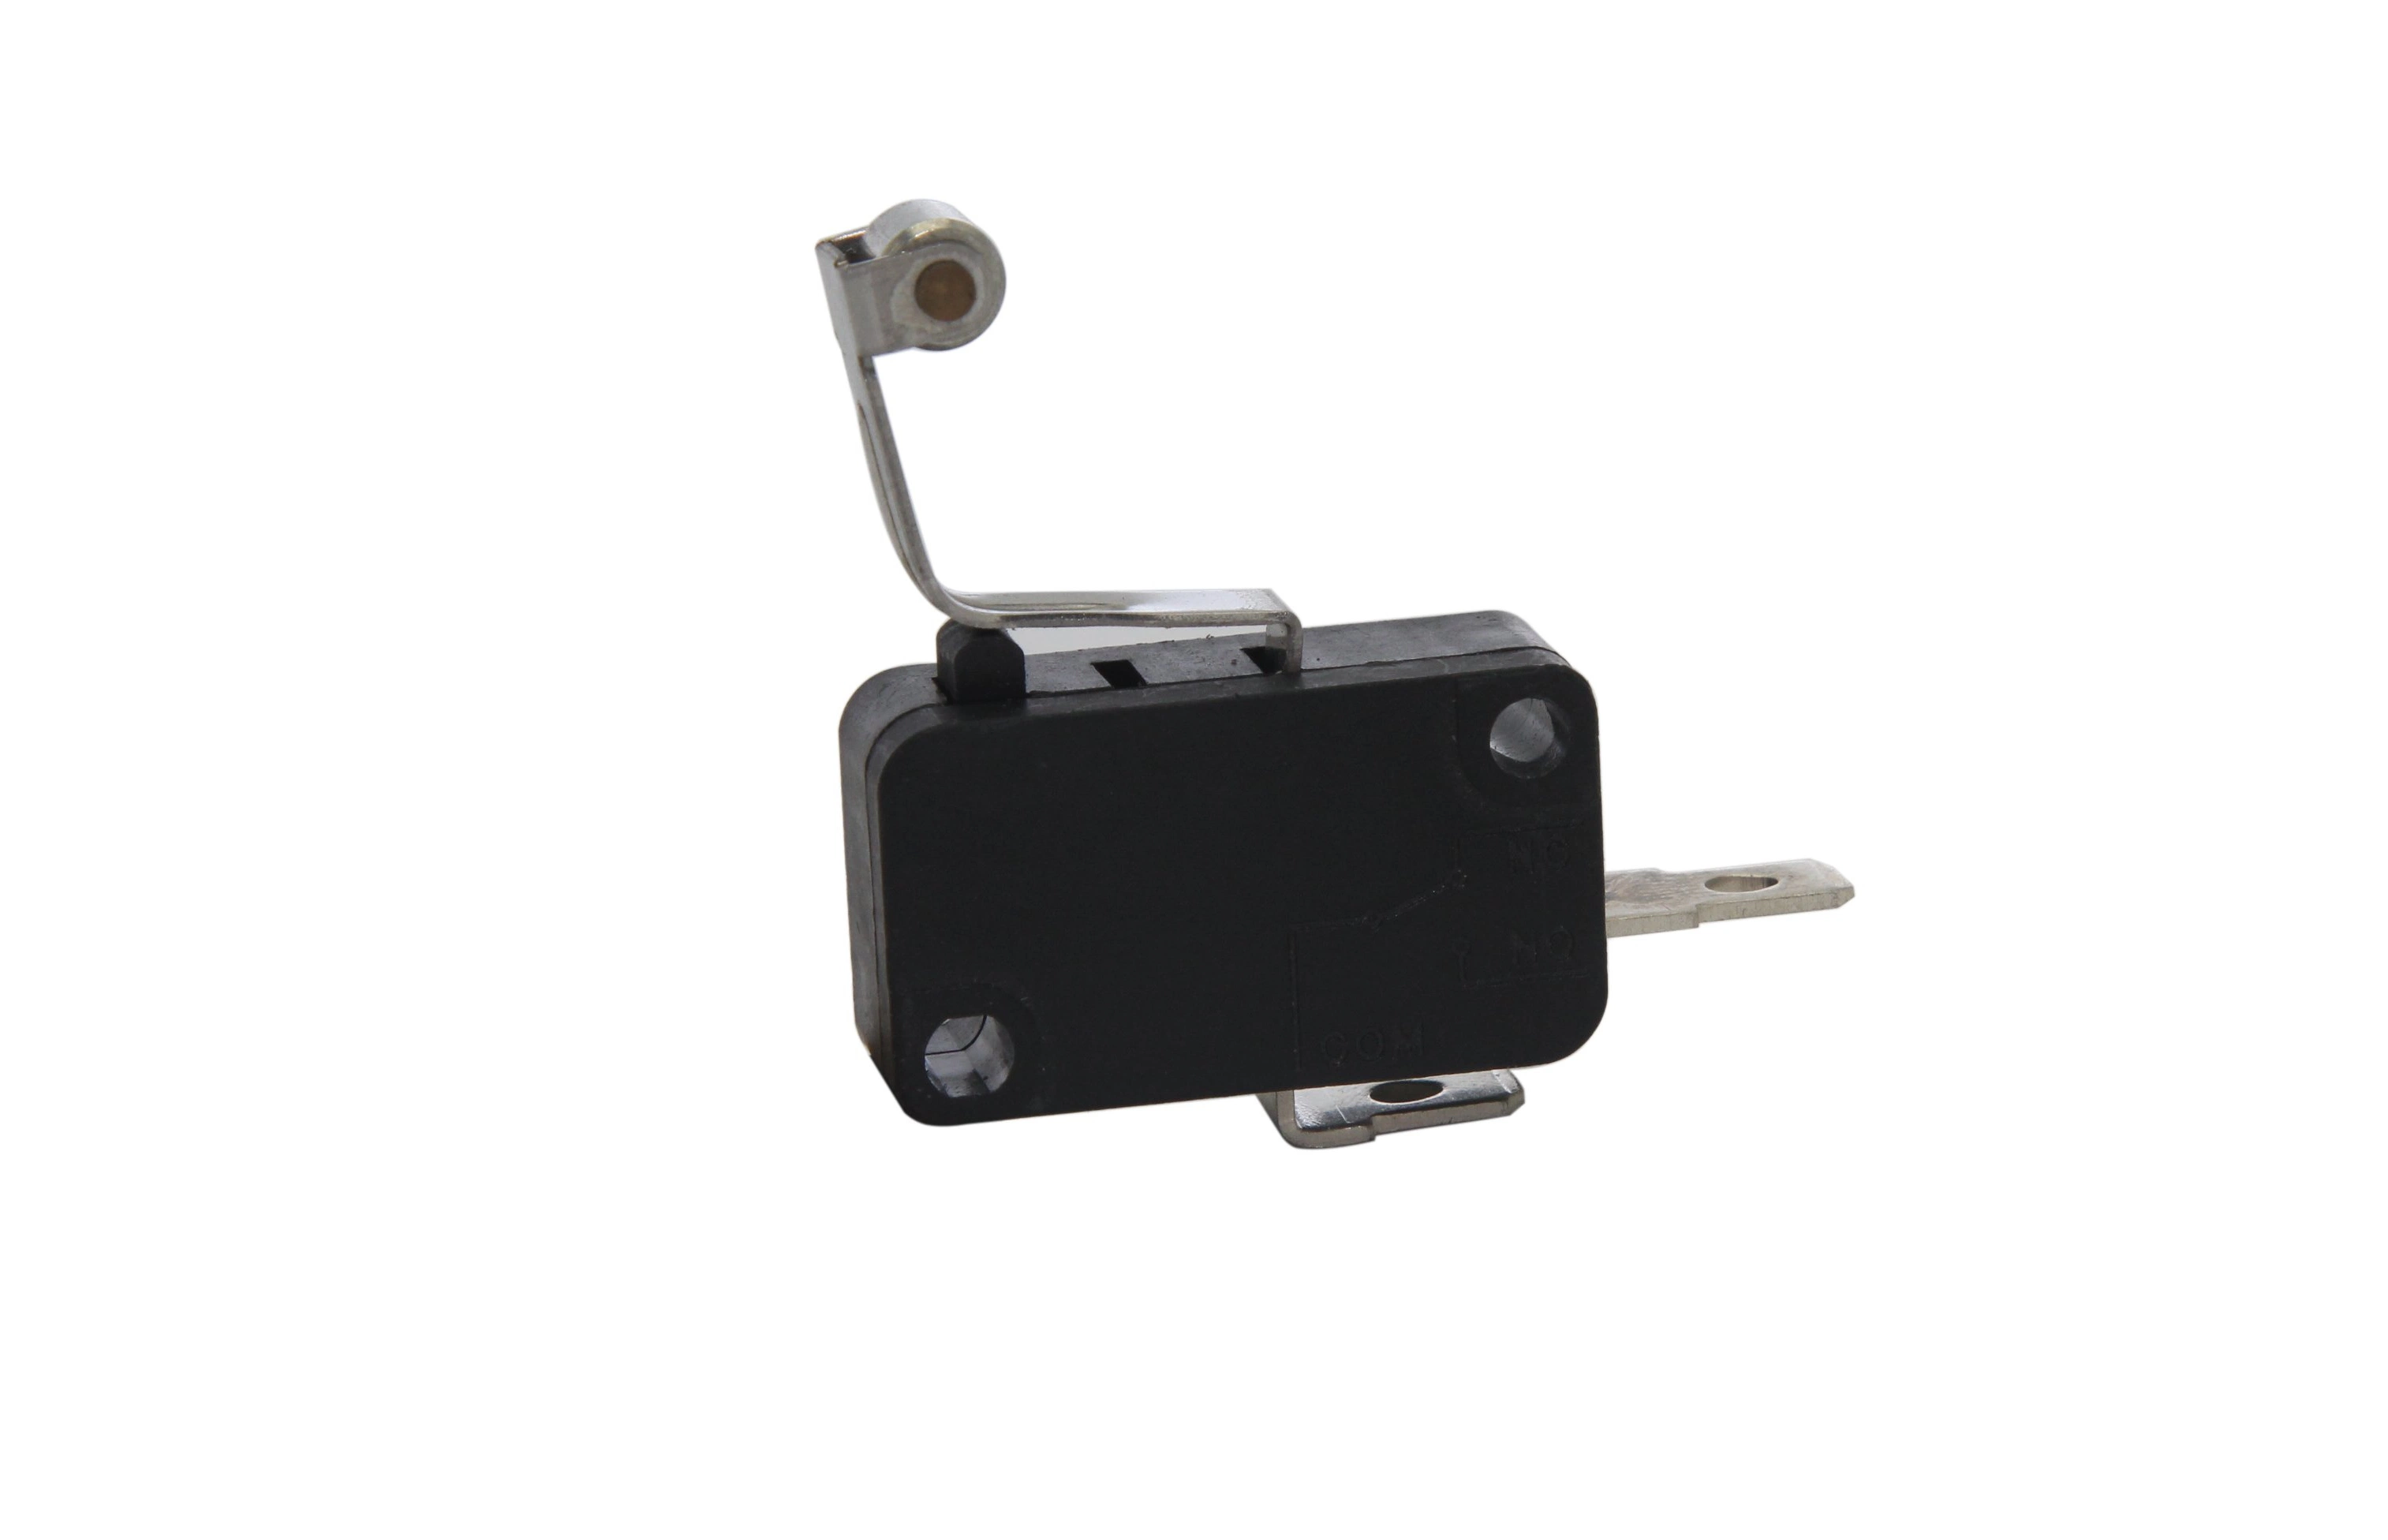 Microinterruptor para el control de potencia del purificador de agua interruptor de botón pulsador